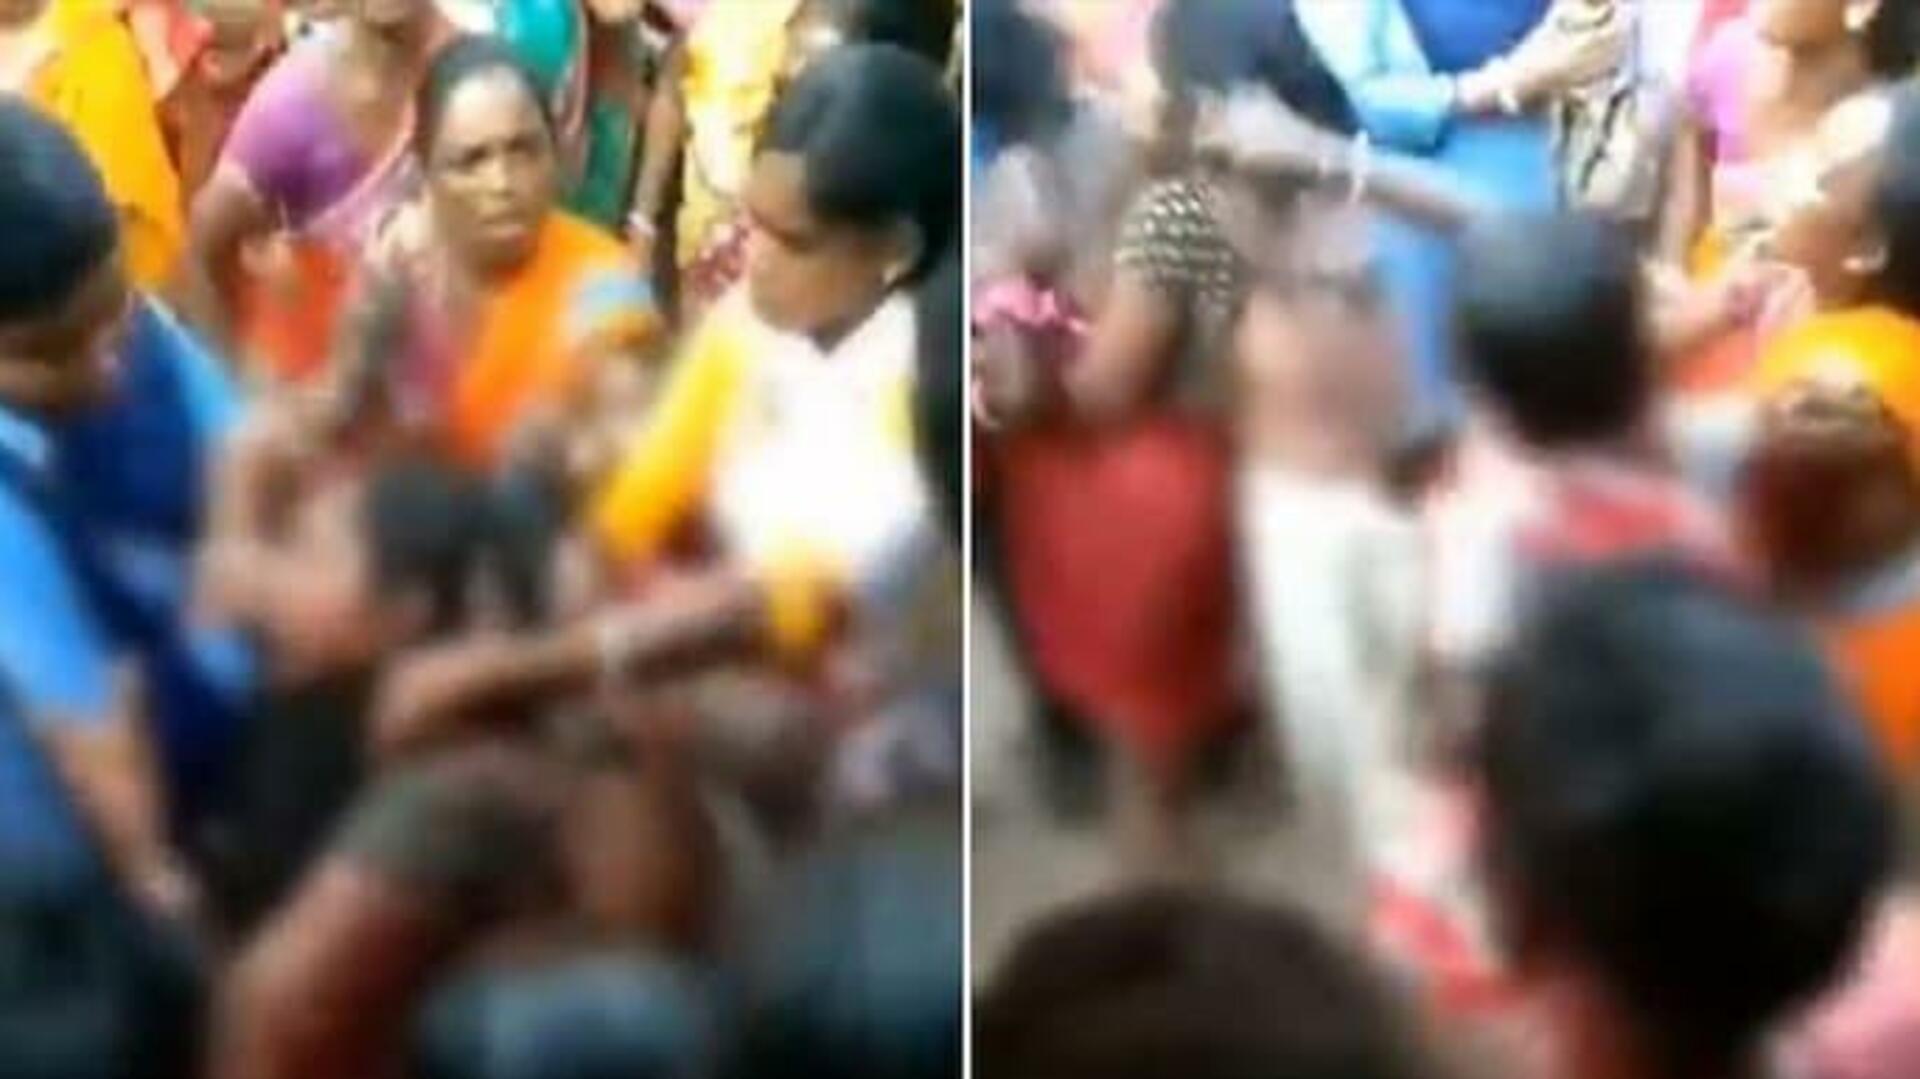 மணிப்பூரை அடுத்து மேற்கு வங்கத்தில்: அரை நிர்வாணமாக இழுத்து செல்லப்பட்ட 2 பெண்கள்